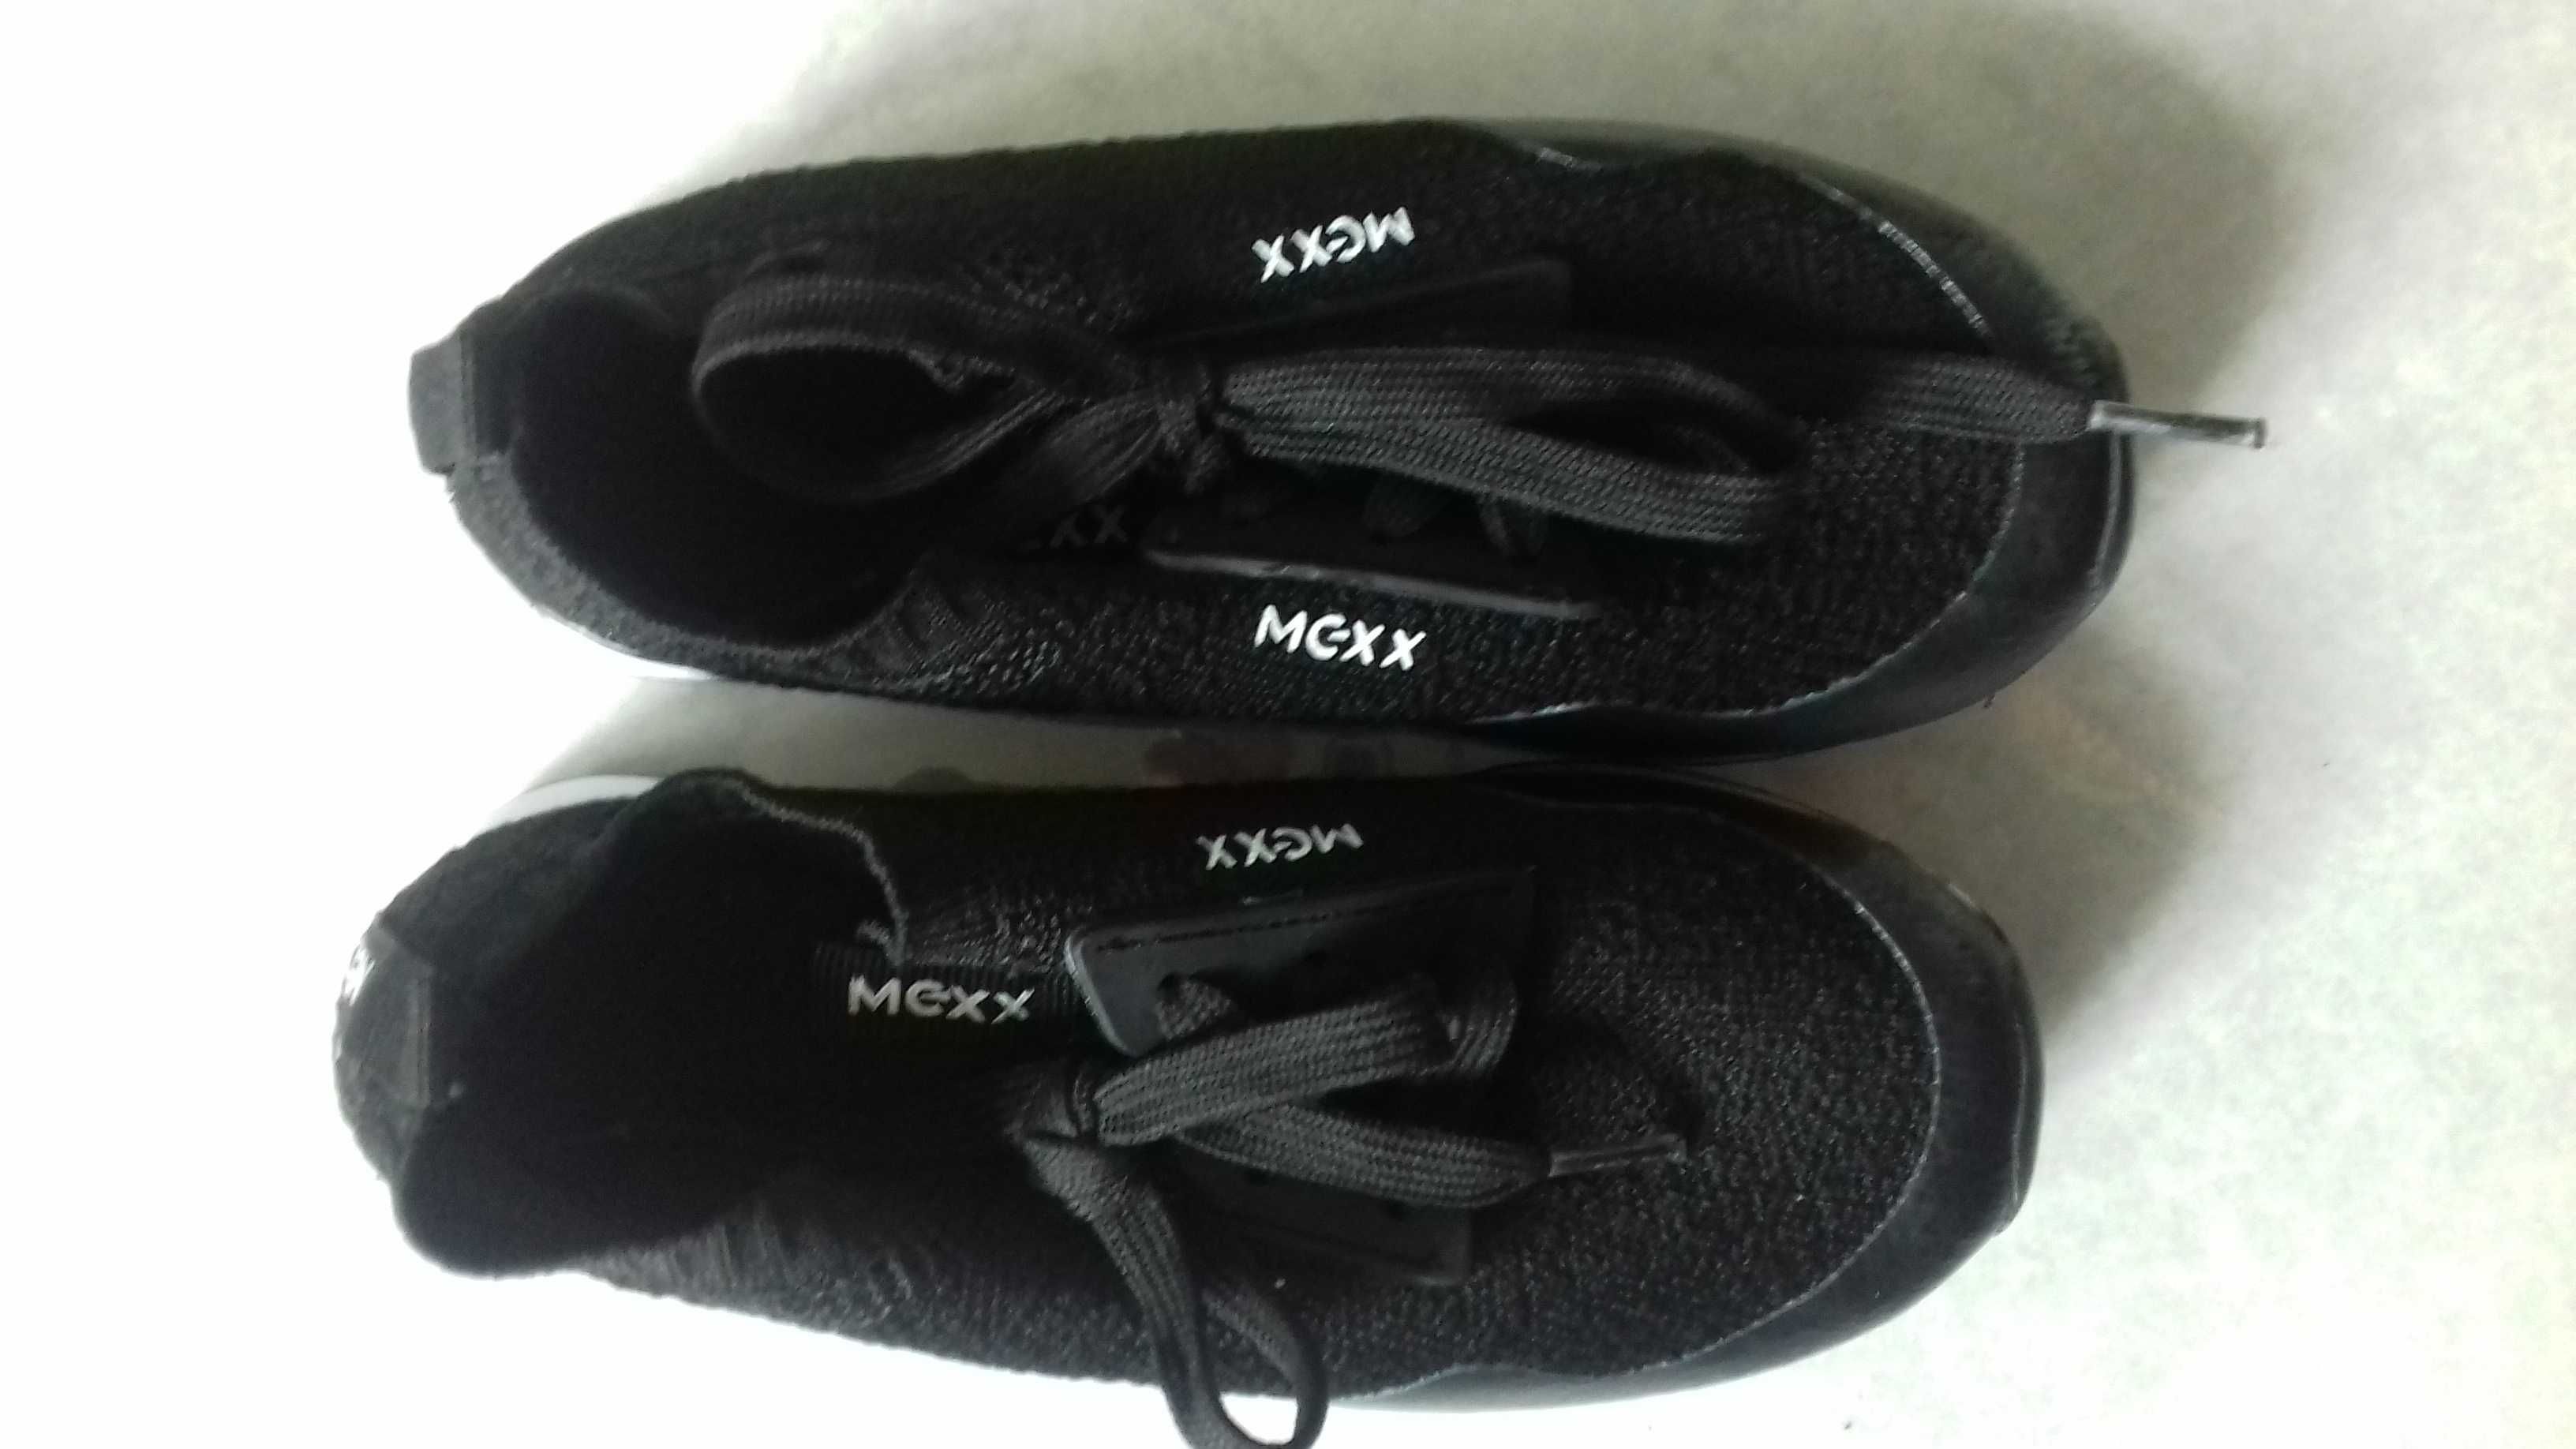 Buty czarne materiał Mexx pianka, chłopiec rozmiar 28, 29 stan bdb